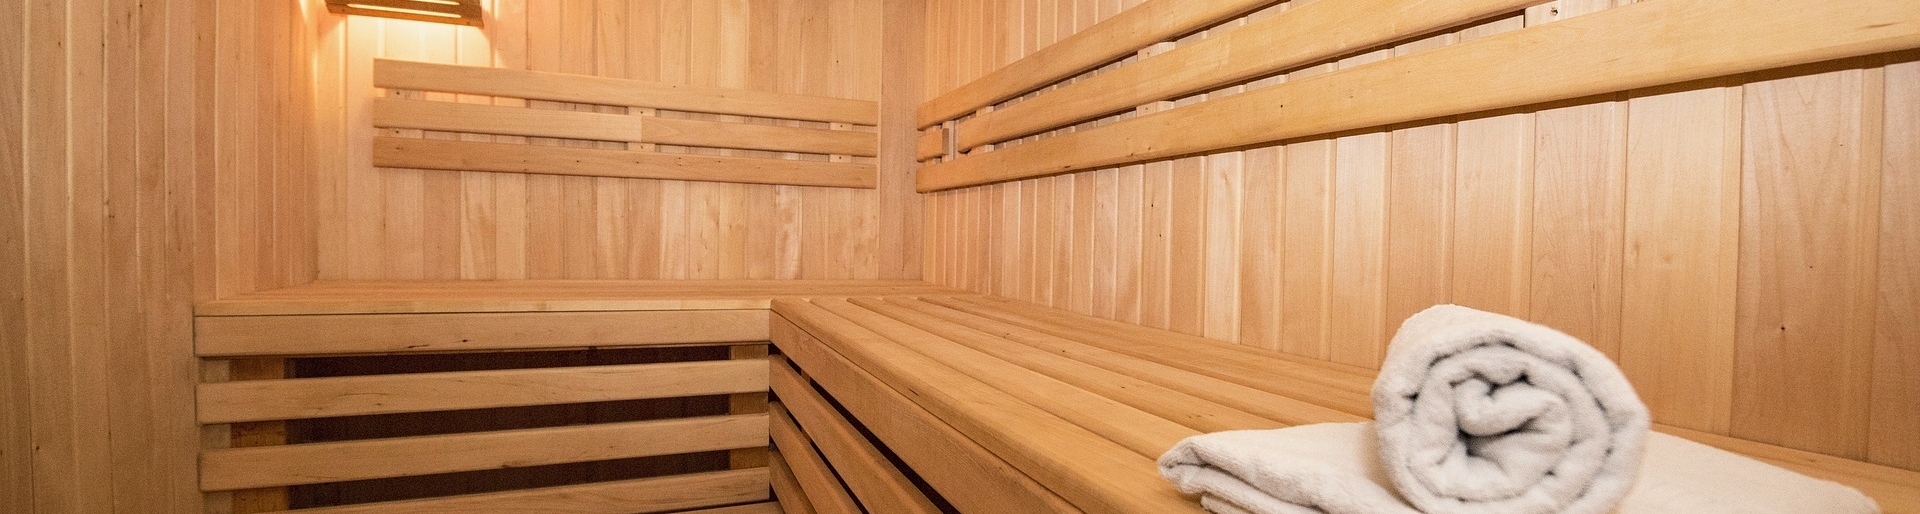 Moderne Sauna aus hellem Holz im Sporthotel in der Schweiz 